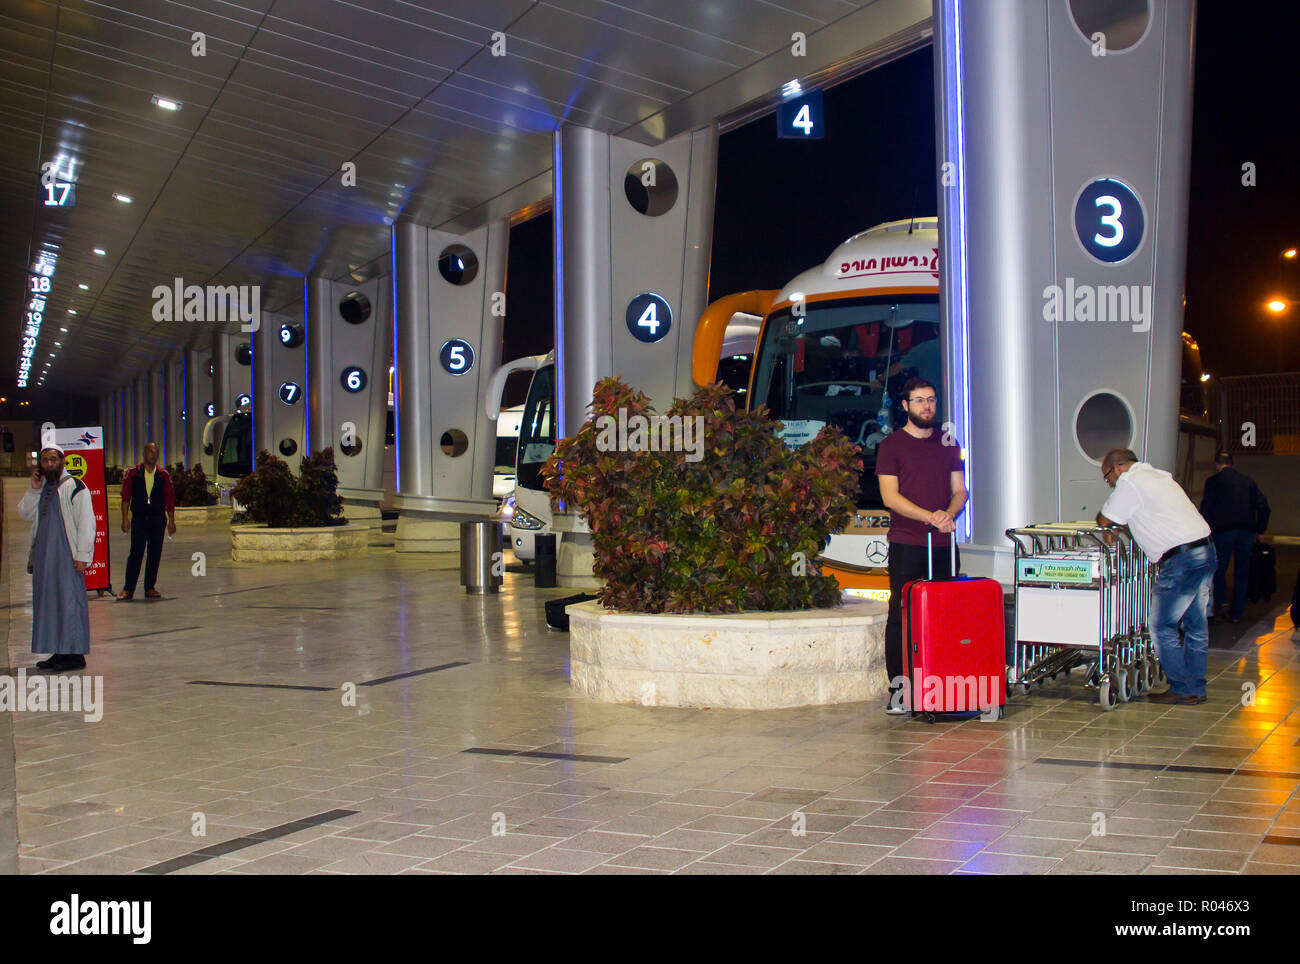 2. Mai 2018 die Ankünfte Busparkplatz am Internationalen Flughafen Ben Gurion, Tel Aviv, Israel in der Nacht. Passagiere hier anreisen, ihrer onwa zu beginnen. Stockfoto